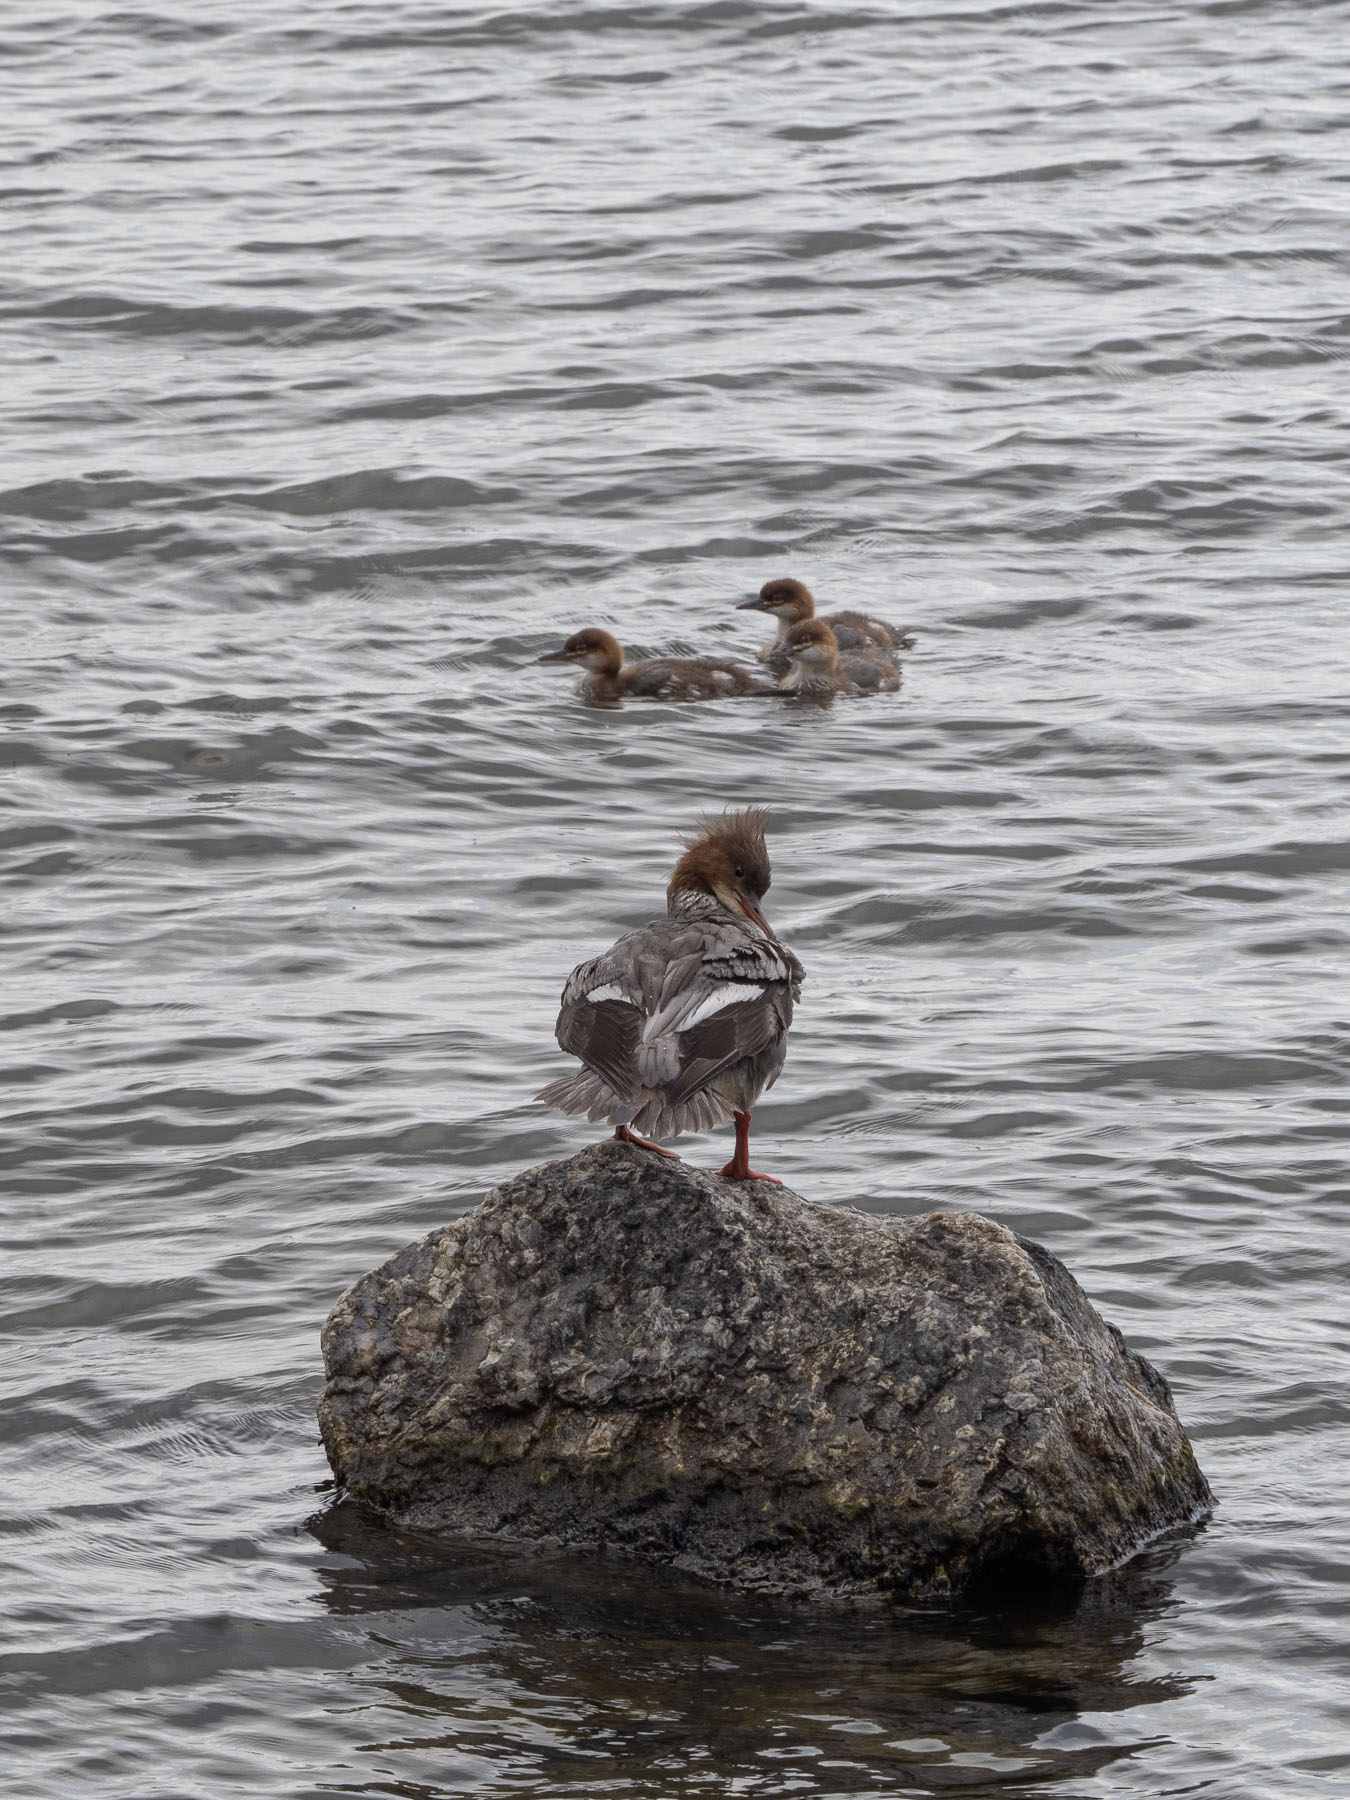 Большой крохаль (Mergus merganser).
Самка с птенцами на берегу озера M?laren, Стокгольм. Июль 2020 года. Автор фото: Сутормина Марина